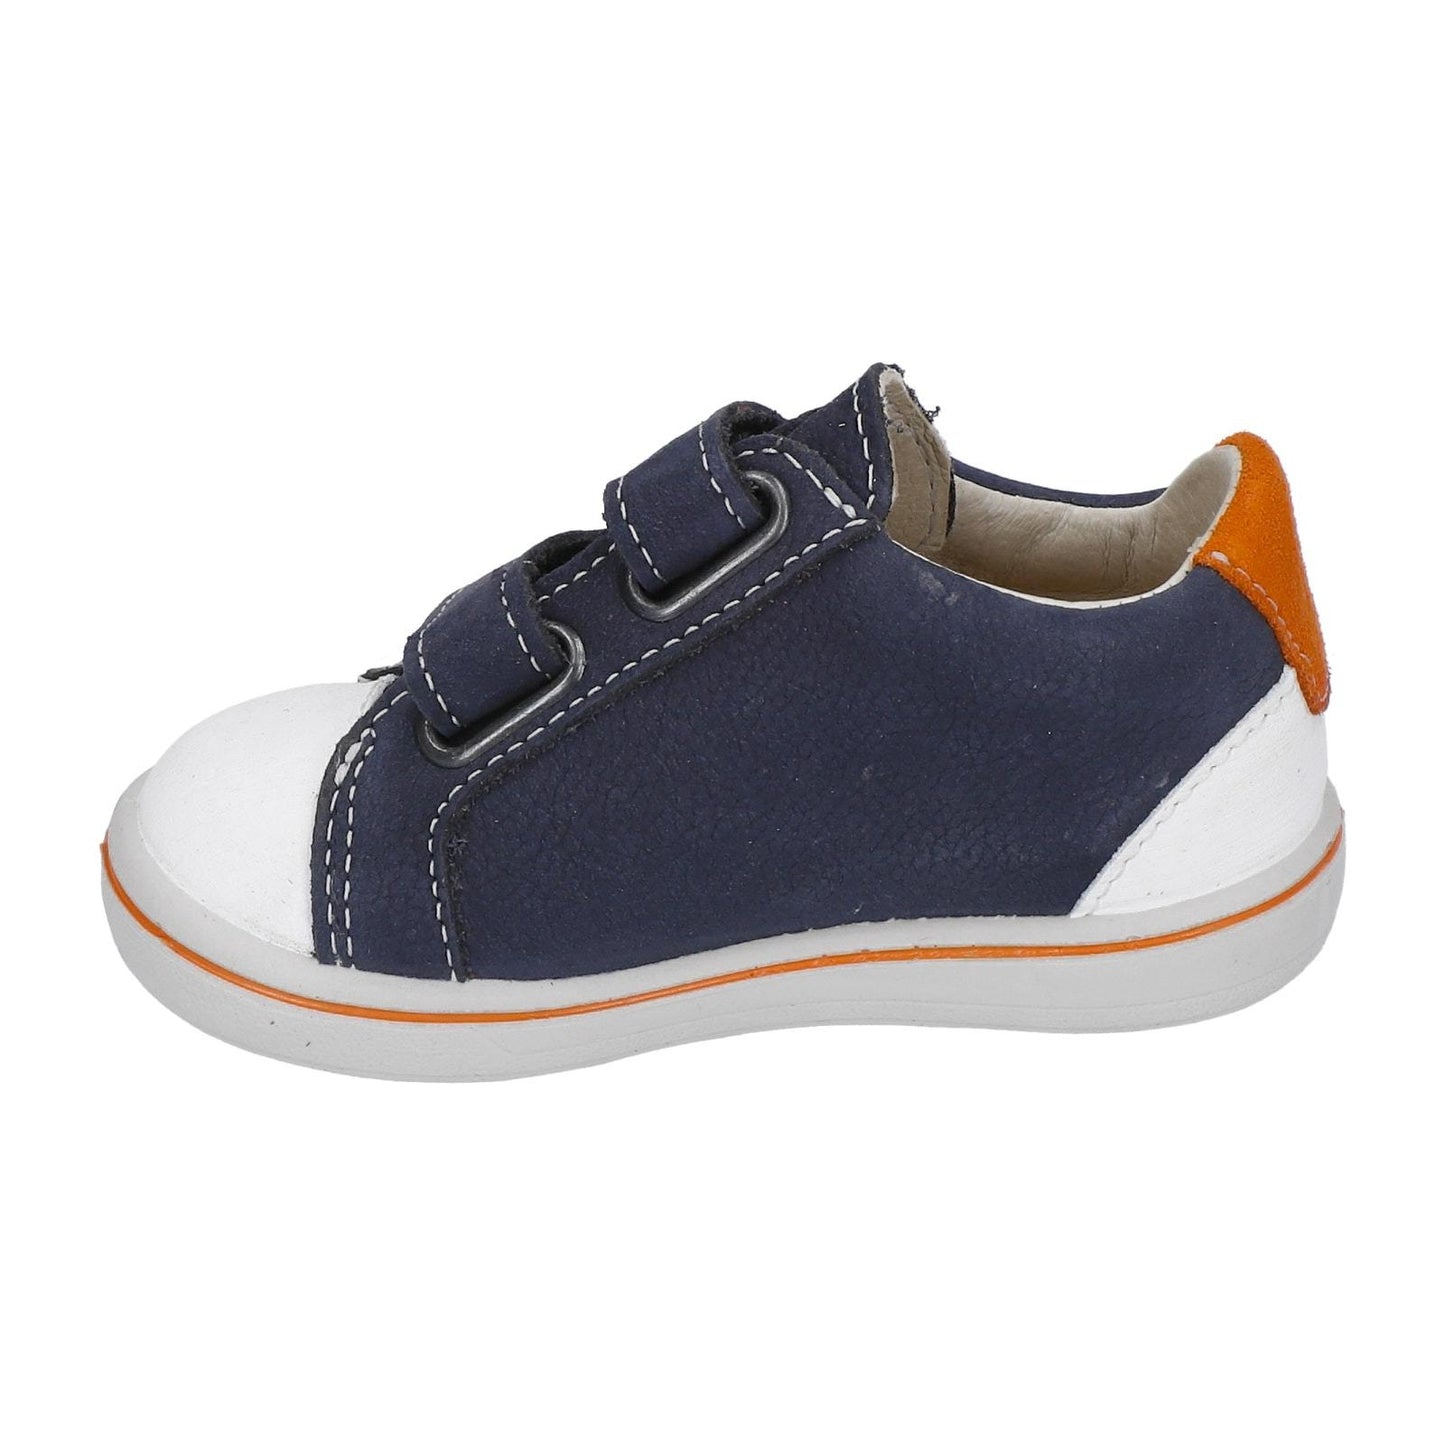 Nippy Leather Sneaker Shoe in Navy Blue